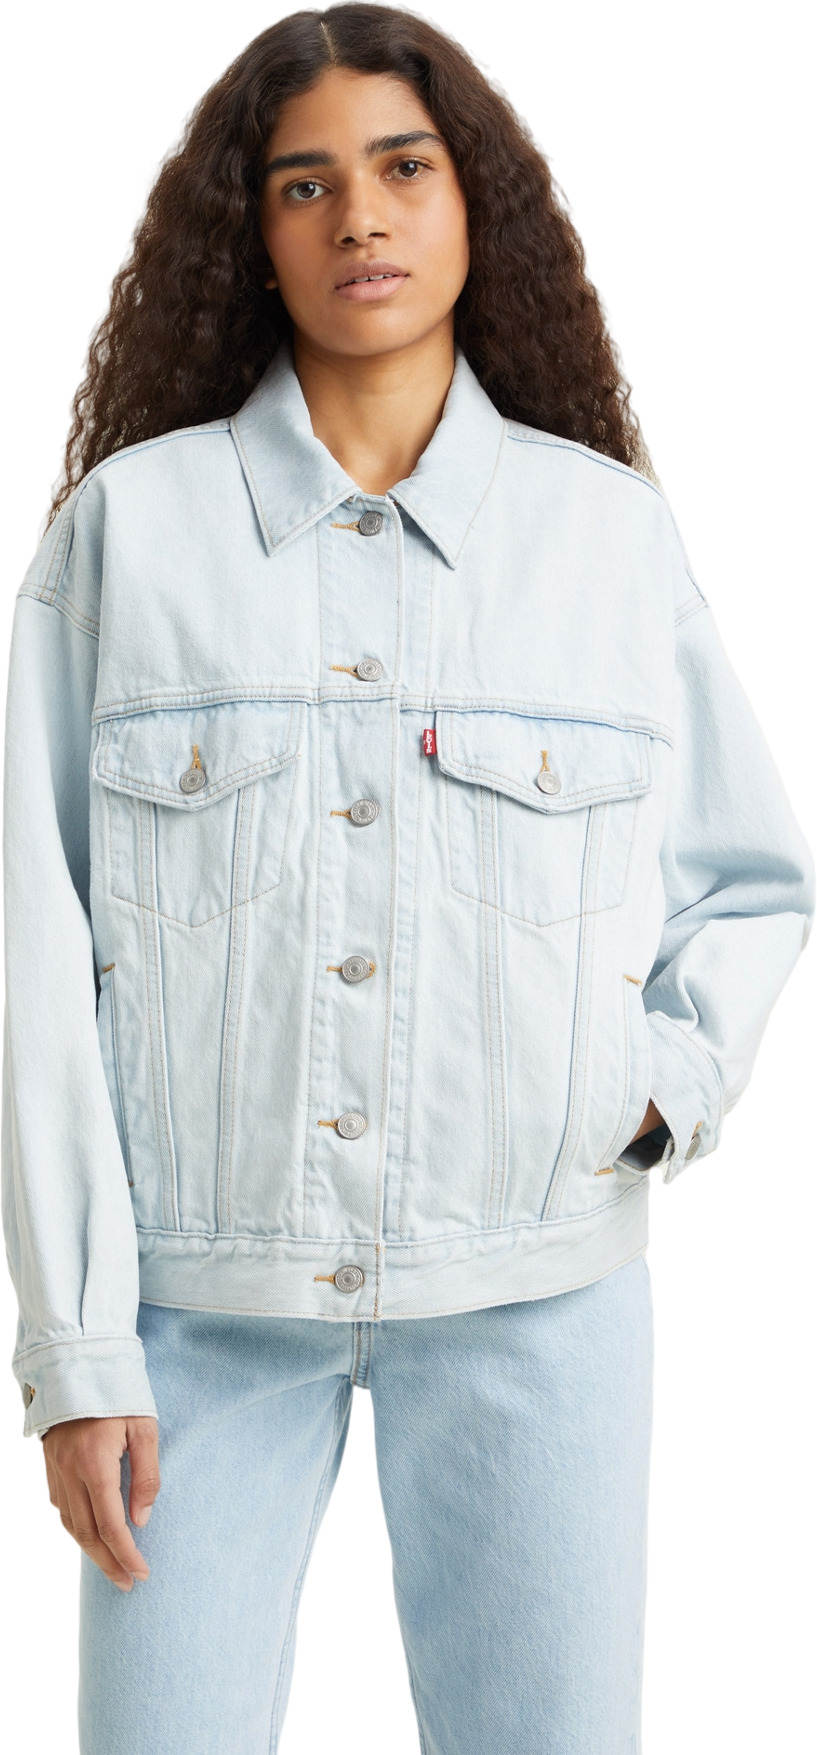 Джинсовая куртка женская Levi's Women 90S Trucker Jacket голубая M